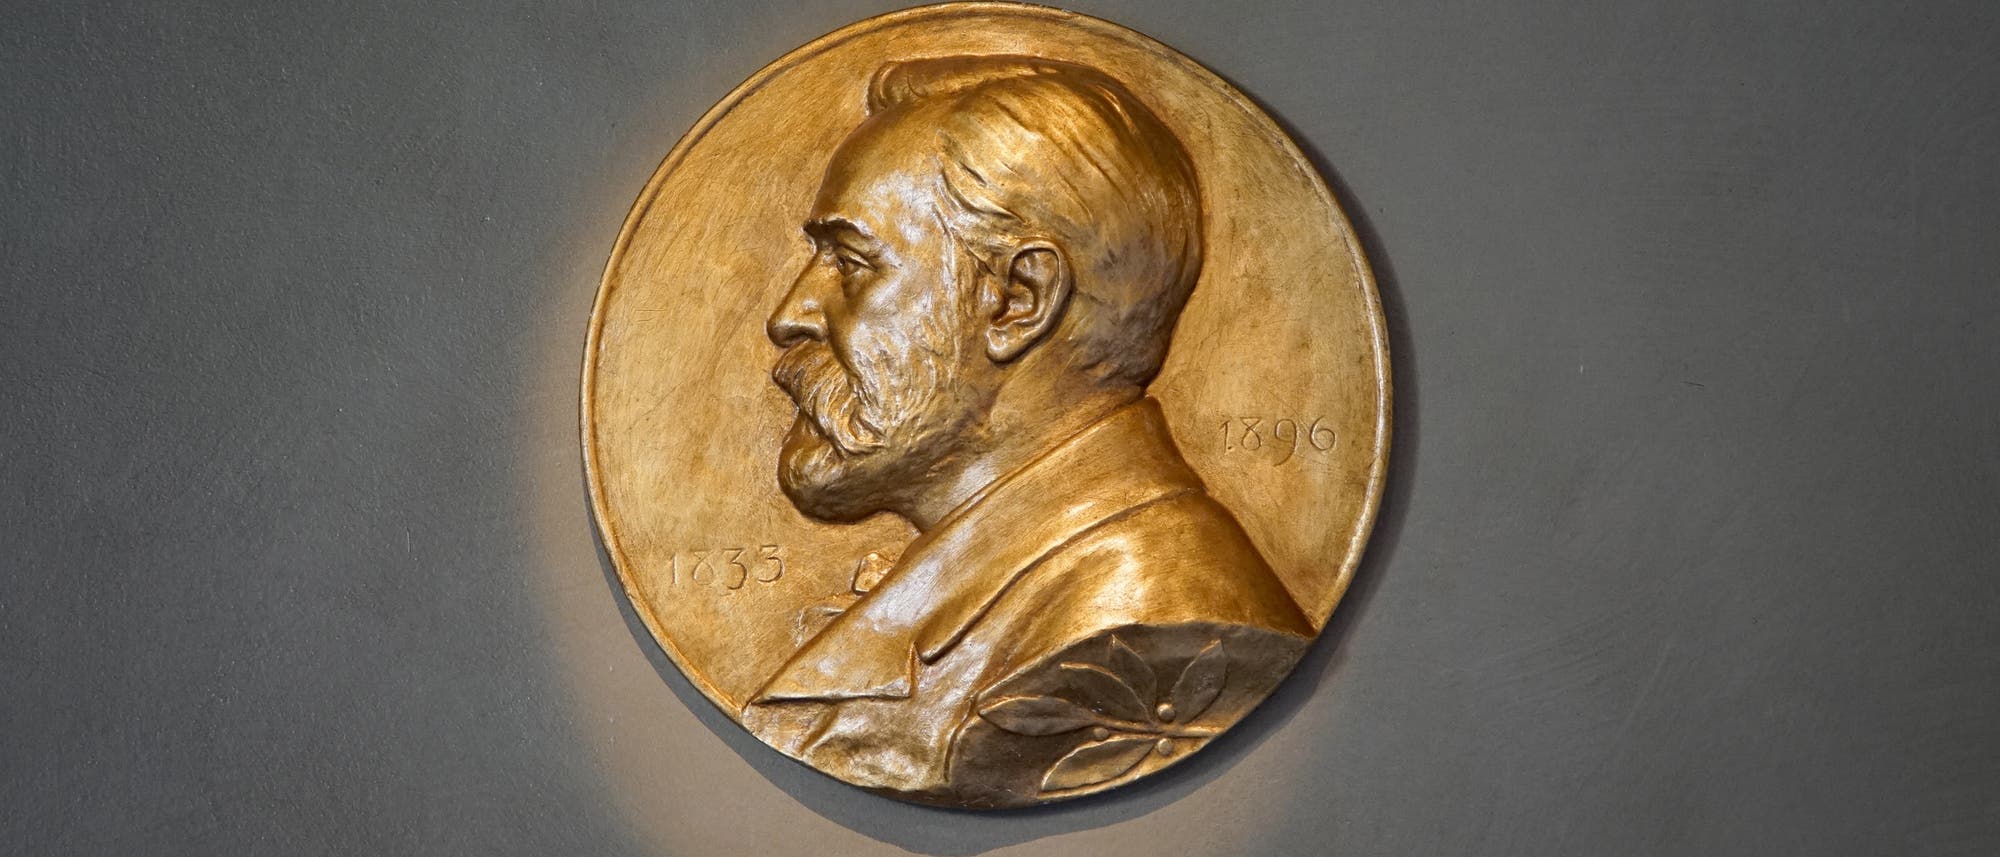 Die Statuten der Nobelstiftung besagen, die Preisträger sollen eine Goldmedaille bekommen, die das Abbild des Testamentsverfassers und eine angemessene Inschrift tragen.